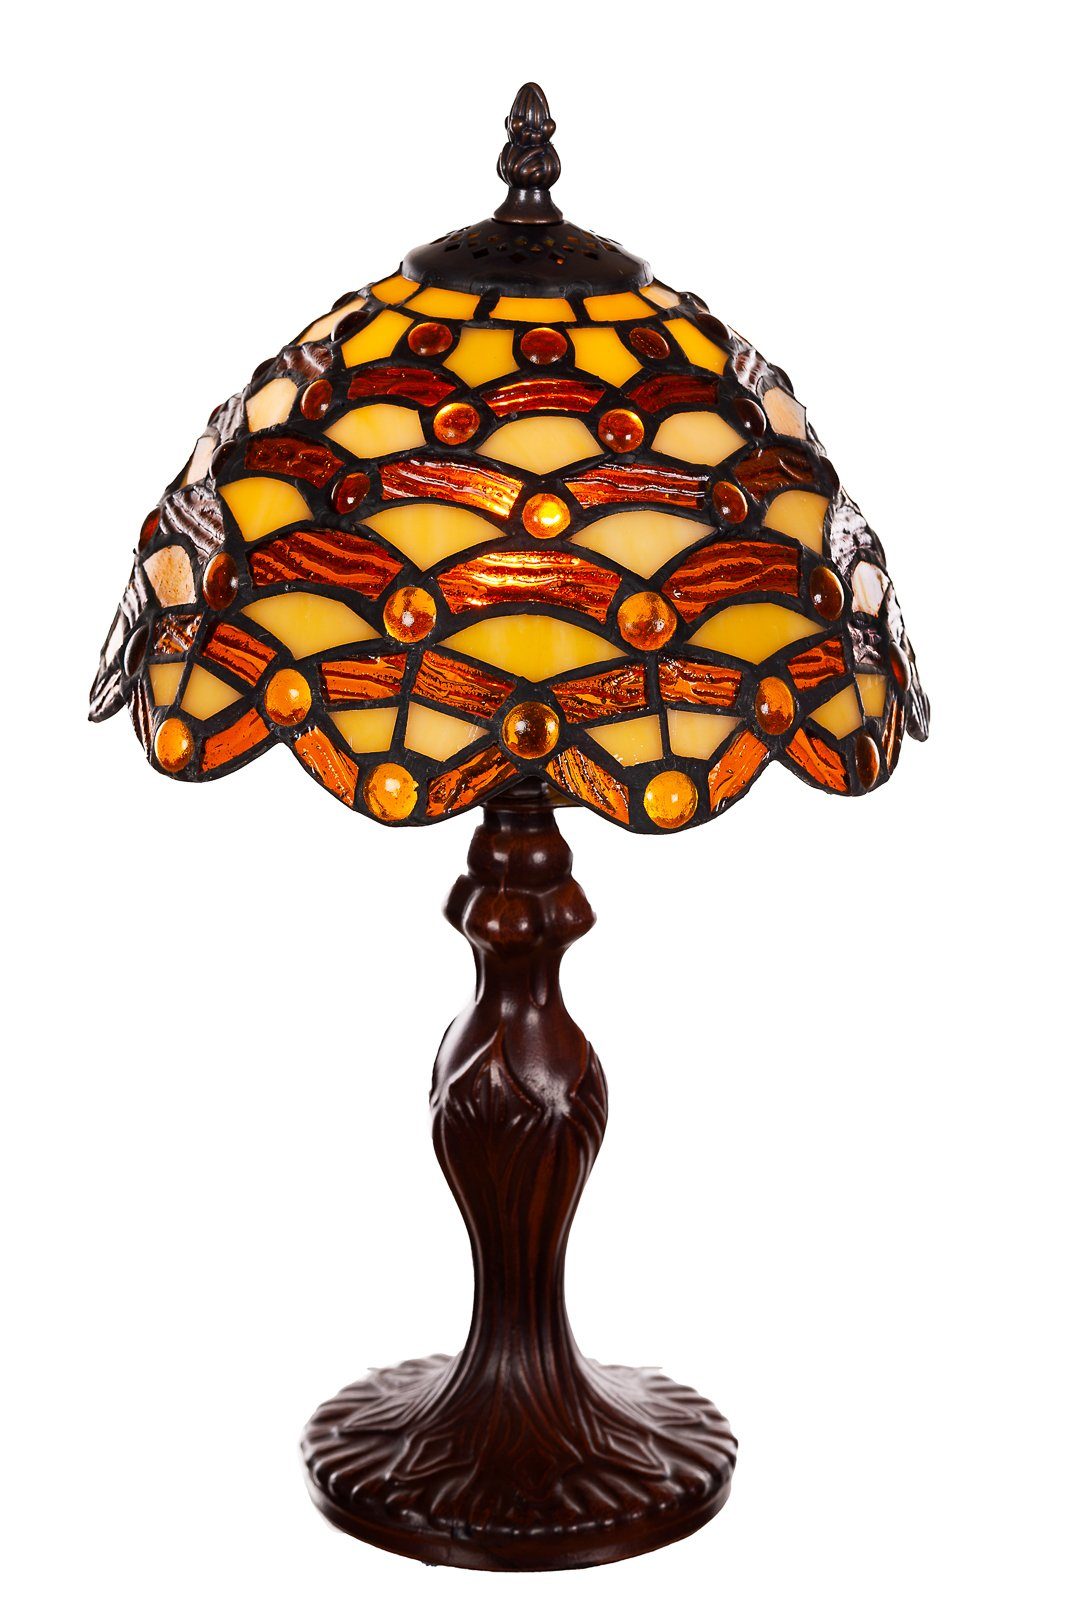 BIRENDY Stehlampe Tischlampe Tiffany Ti156 Lampe Waben Dekorationslampe Steine Motiv